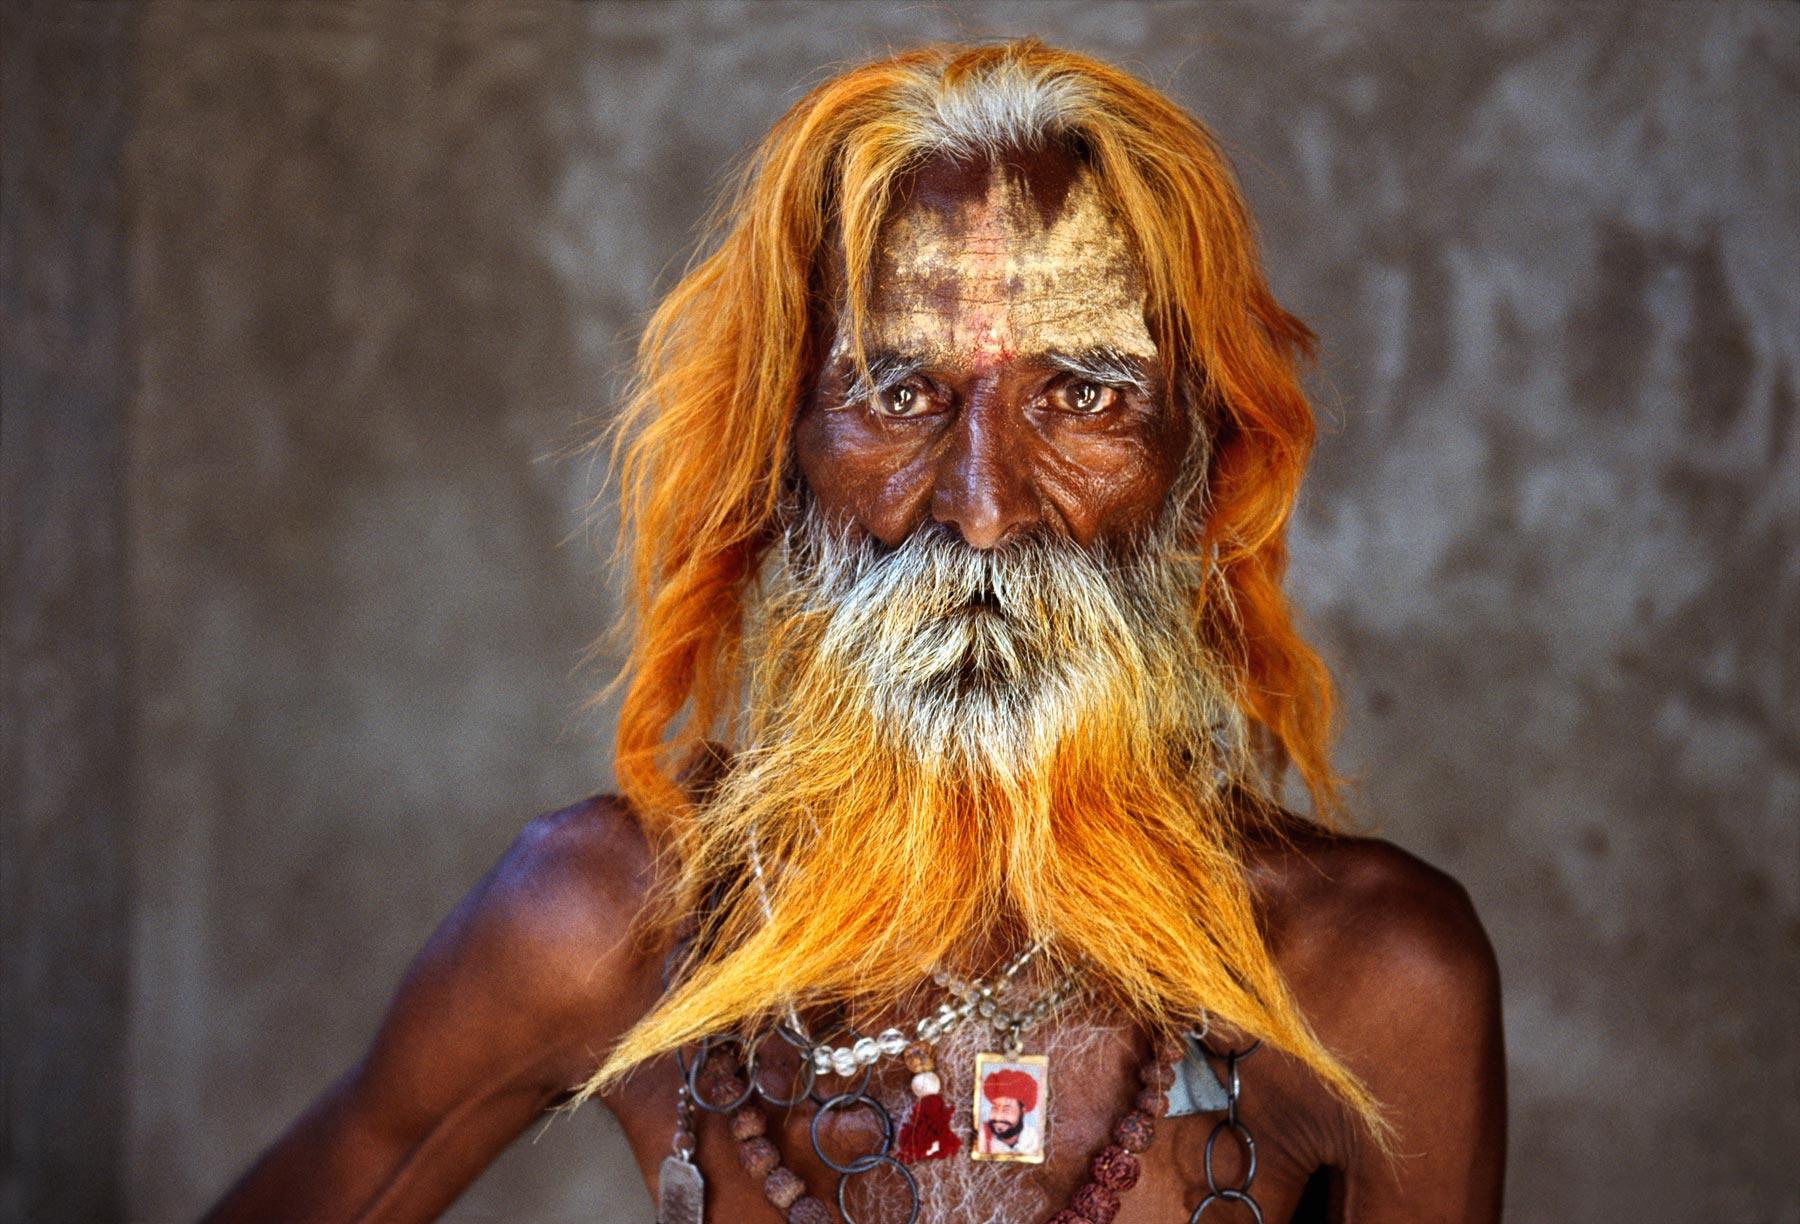  人物肖像摄影。<br/>摄影师Steve McCurry摄于拉贾斯坦邦，印度。 